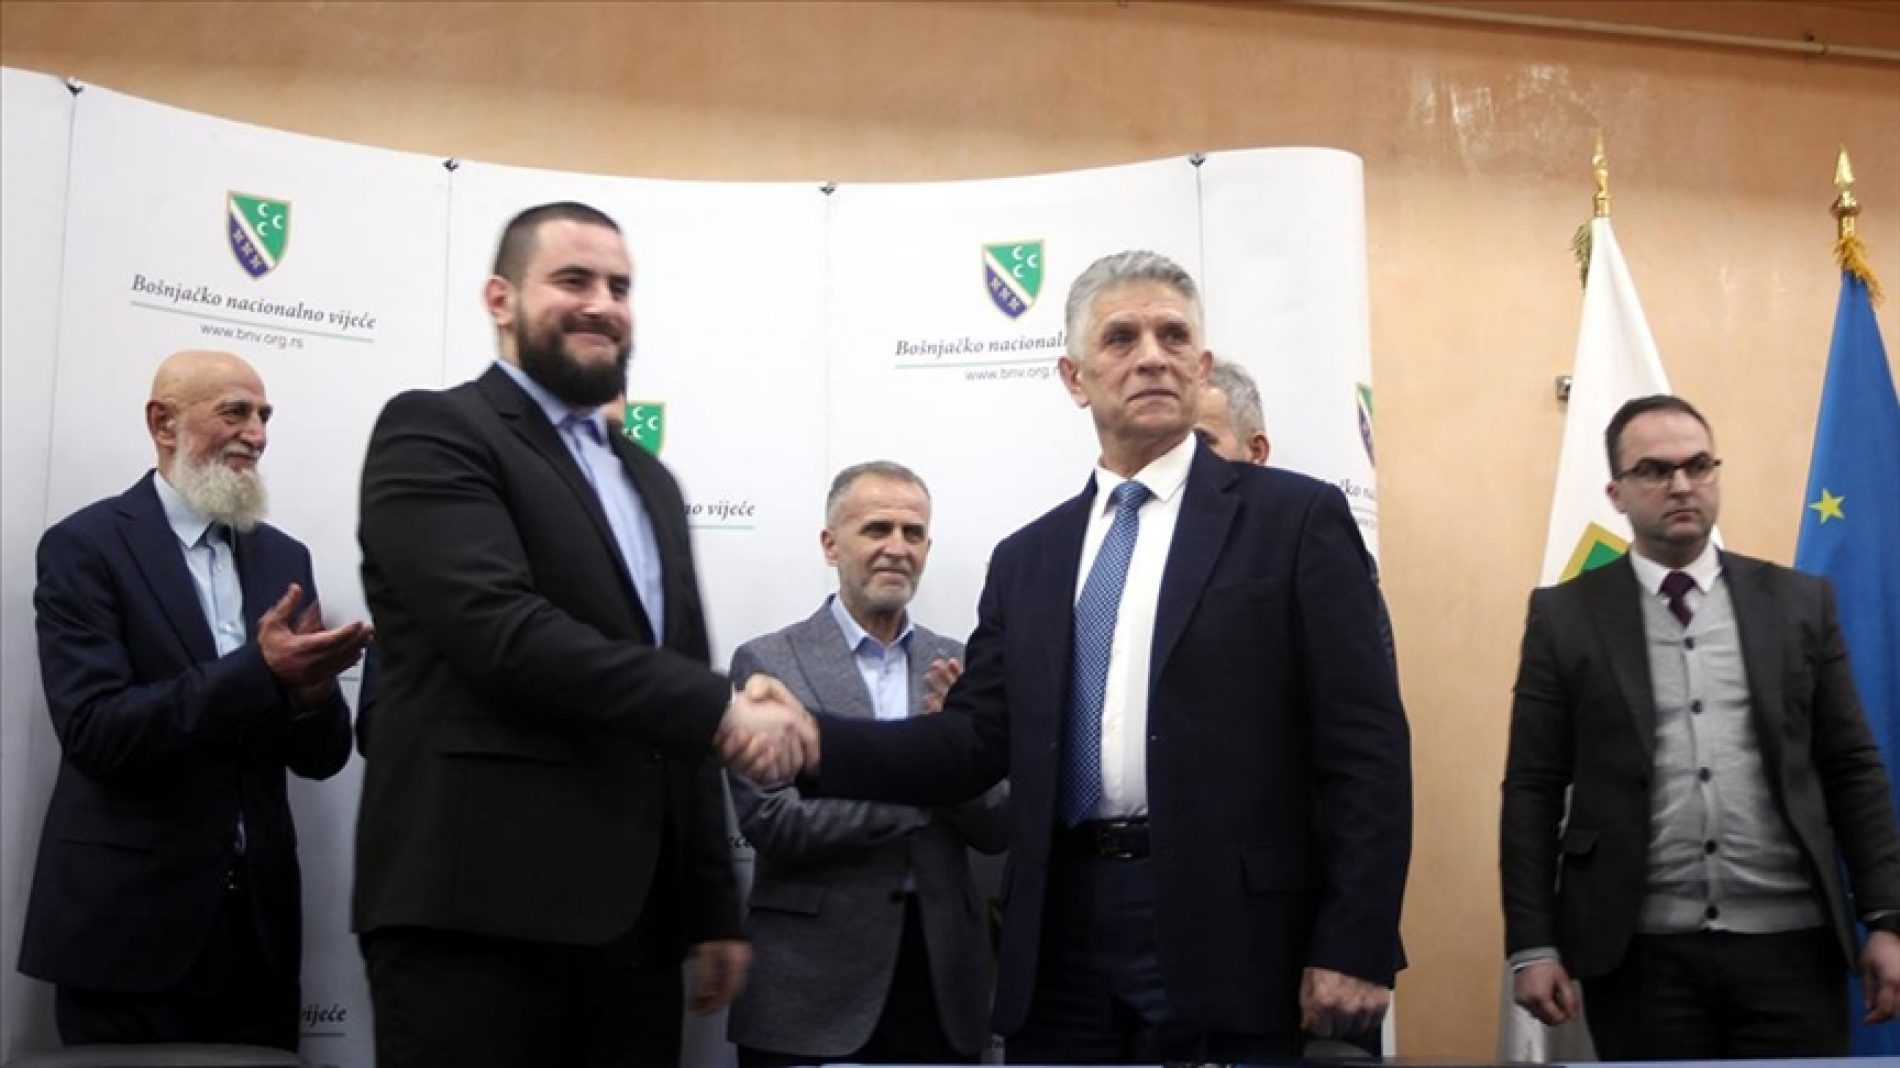 Sandžak: Ugljanin i Zukorlić potpisali sporazum o zajedničkom djelovanju u Bošnjačkom nacionalnom vijeću